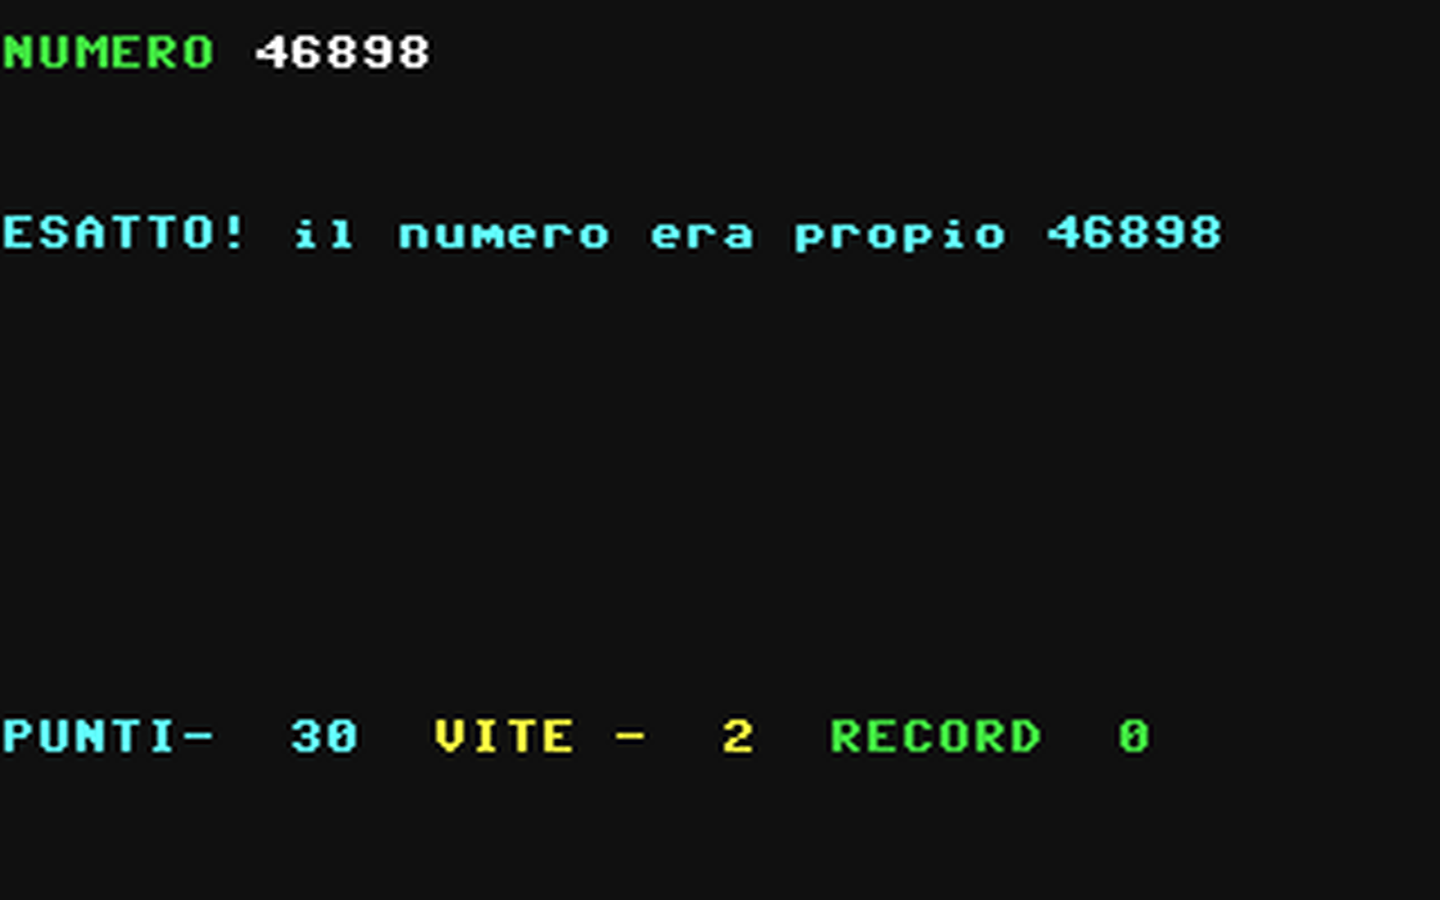 C64 GameBase Colpo_d'Occhio 1985